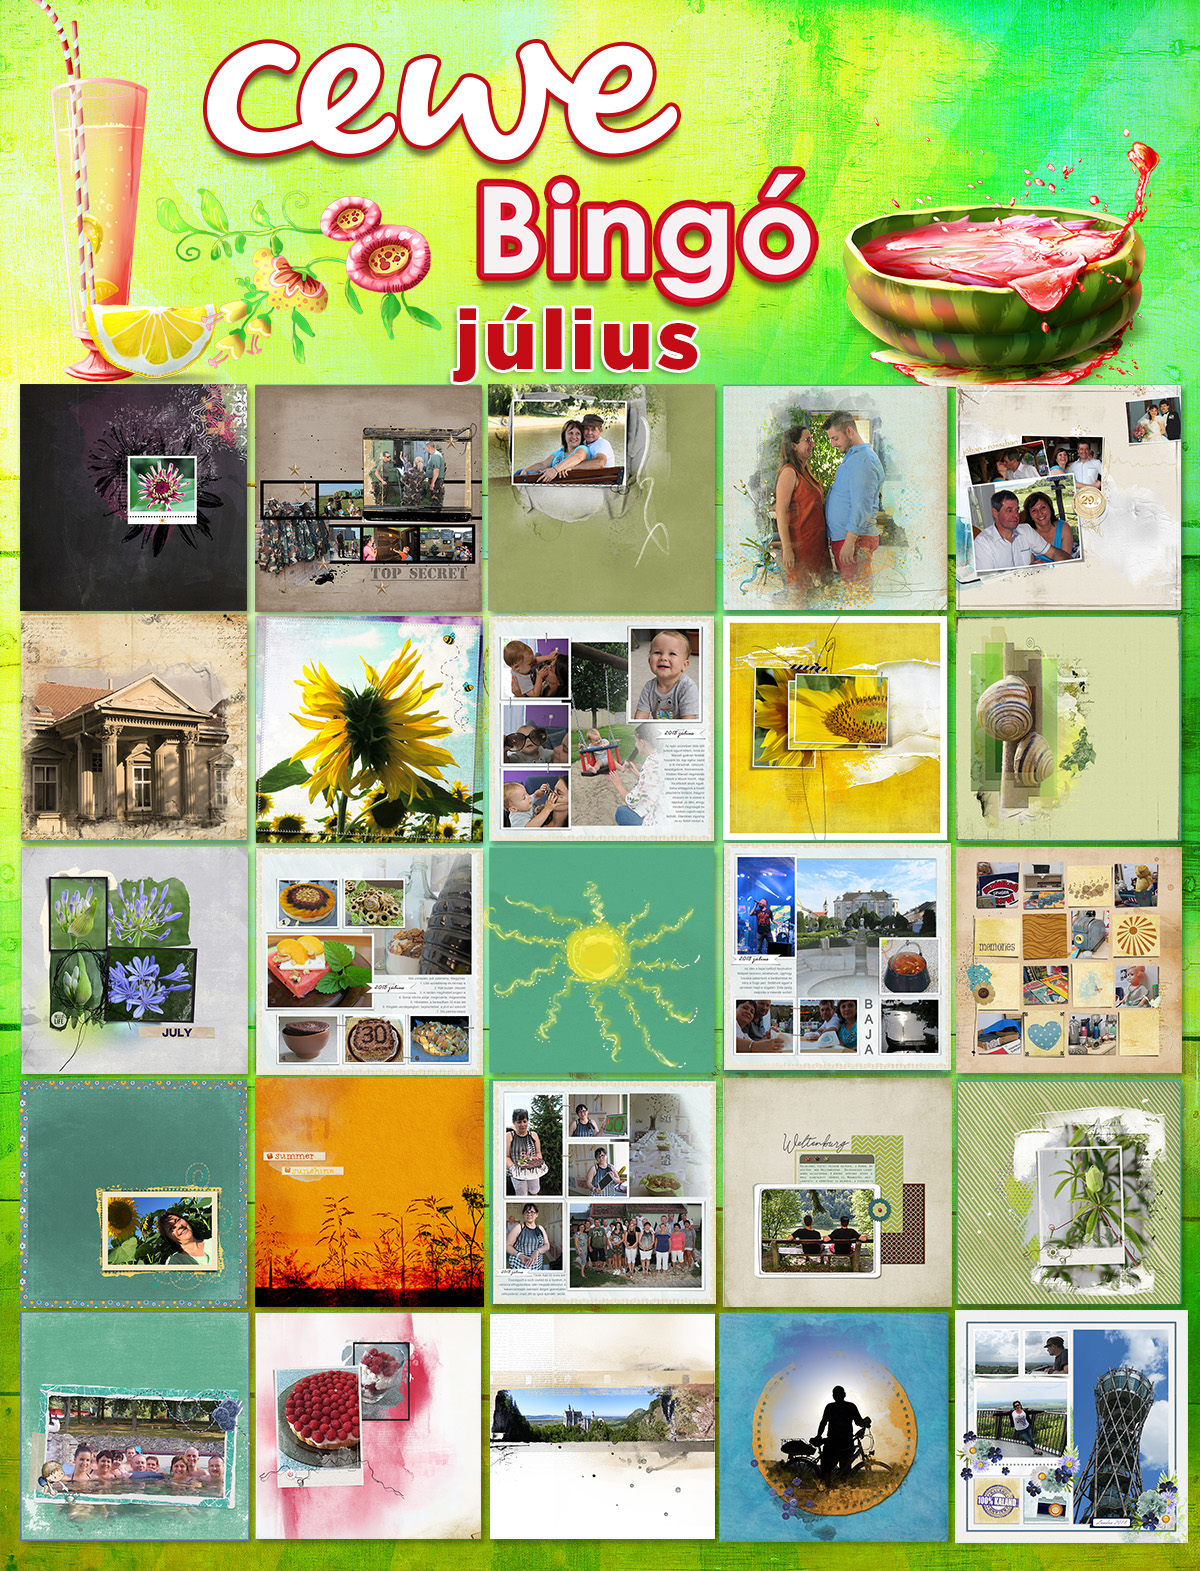 bingo 07